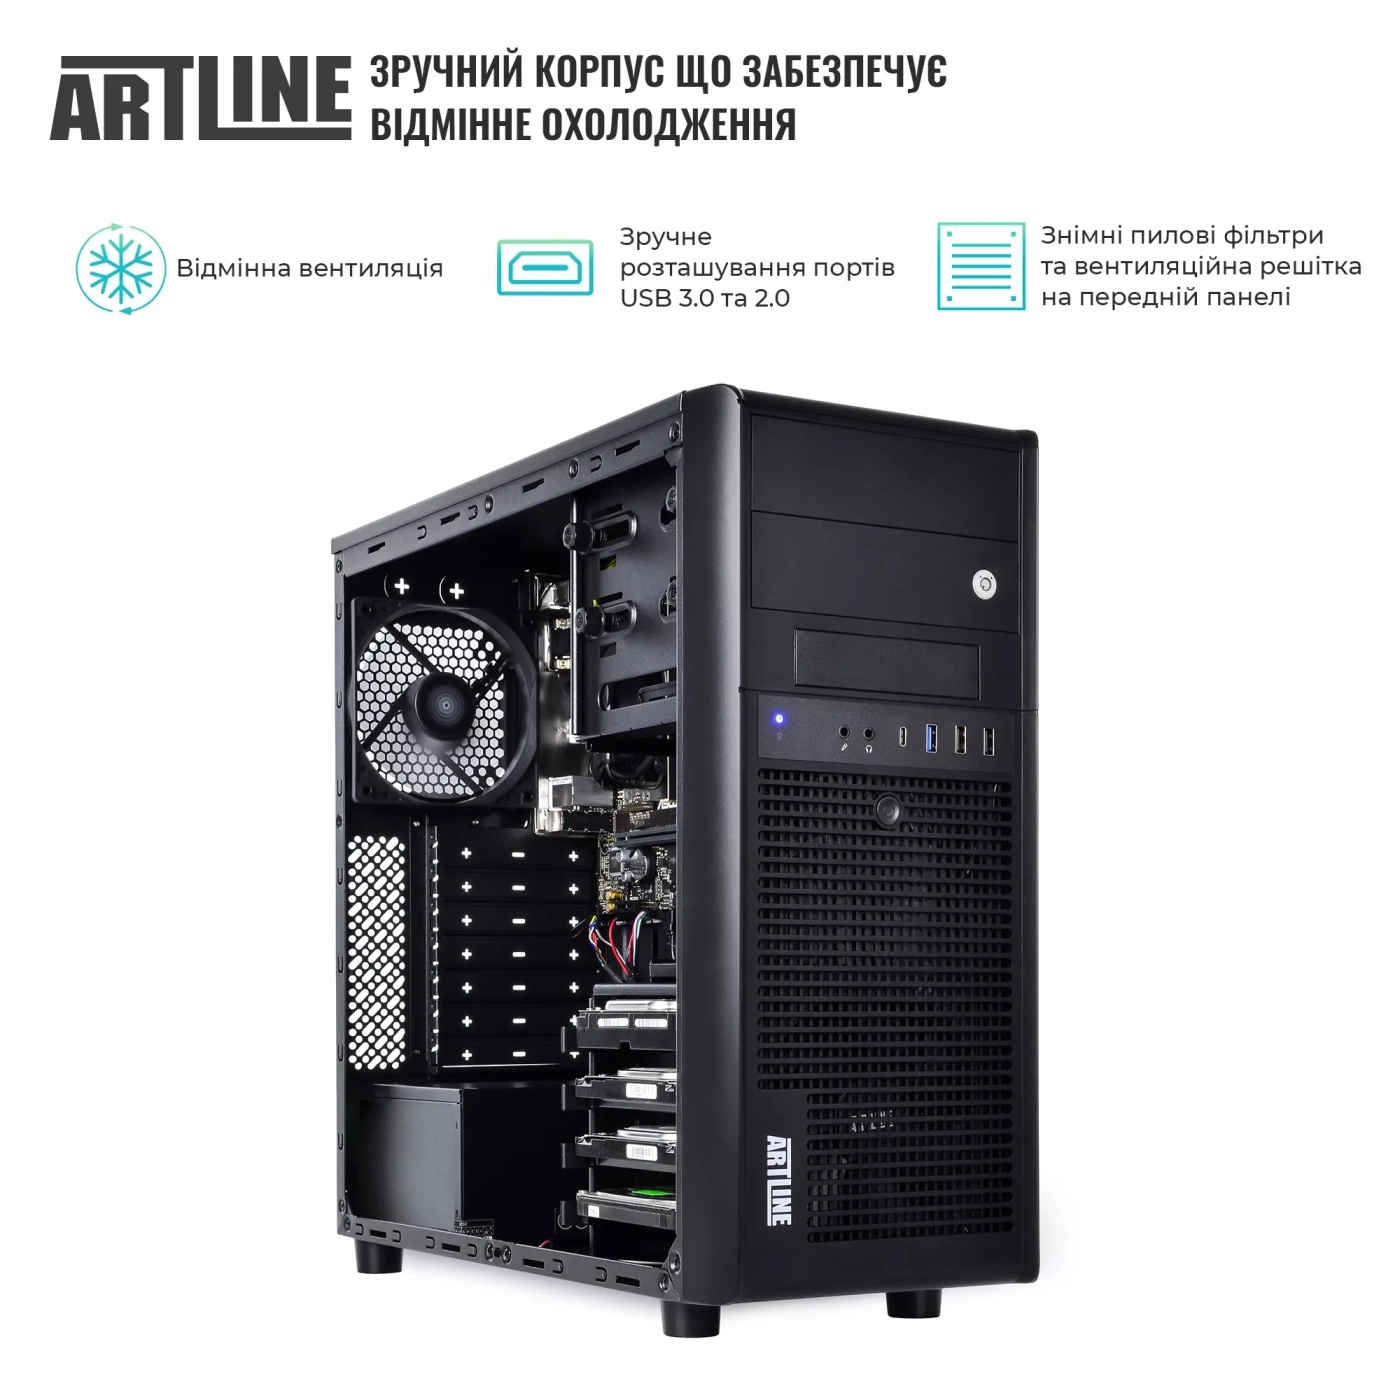 Купить Сервер ARTLINE Business T36 (T36v16) - фото 3